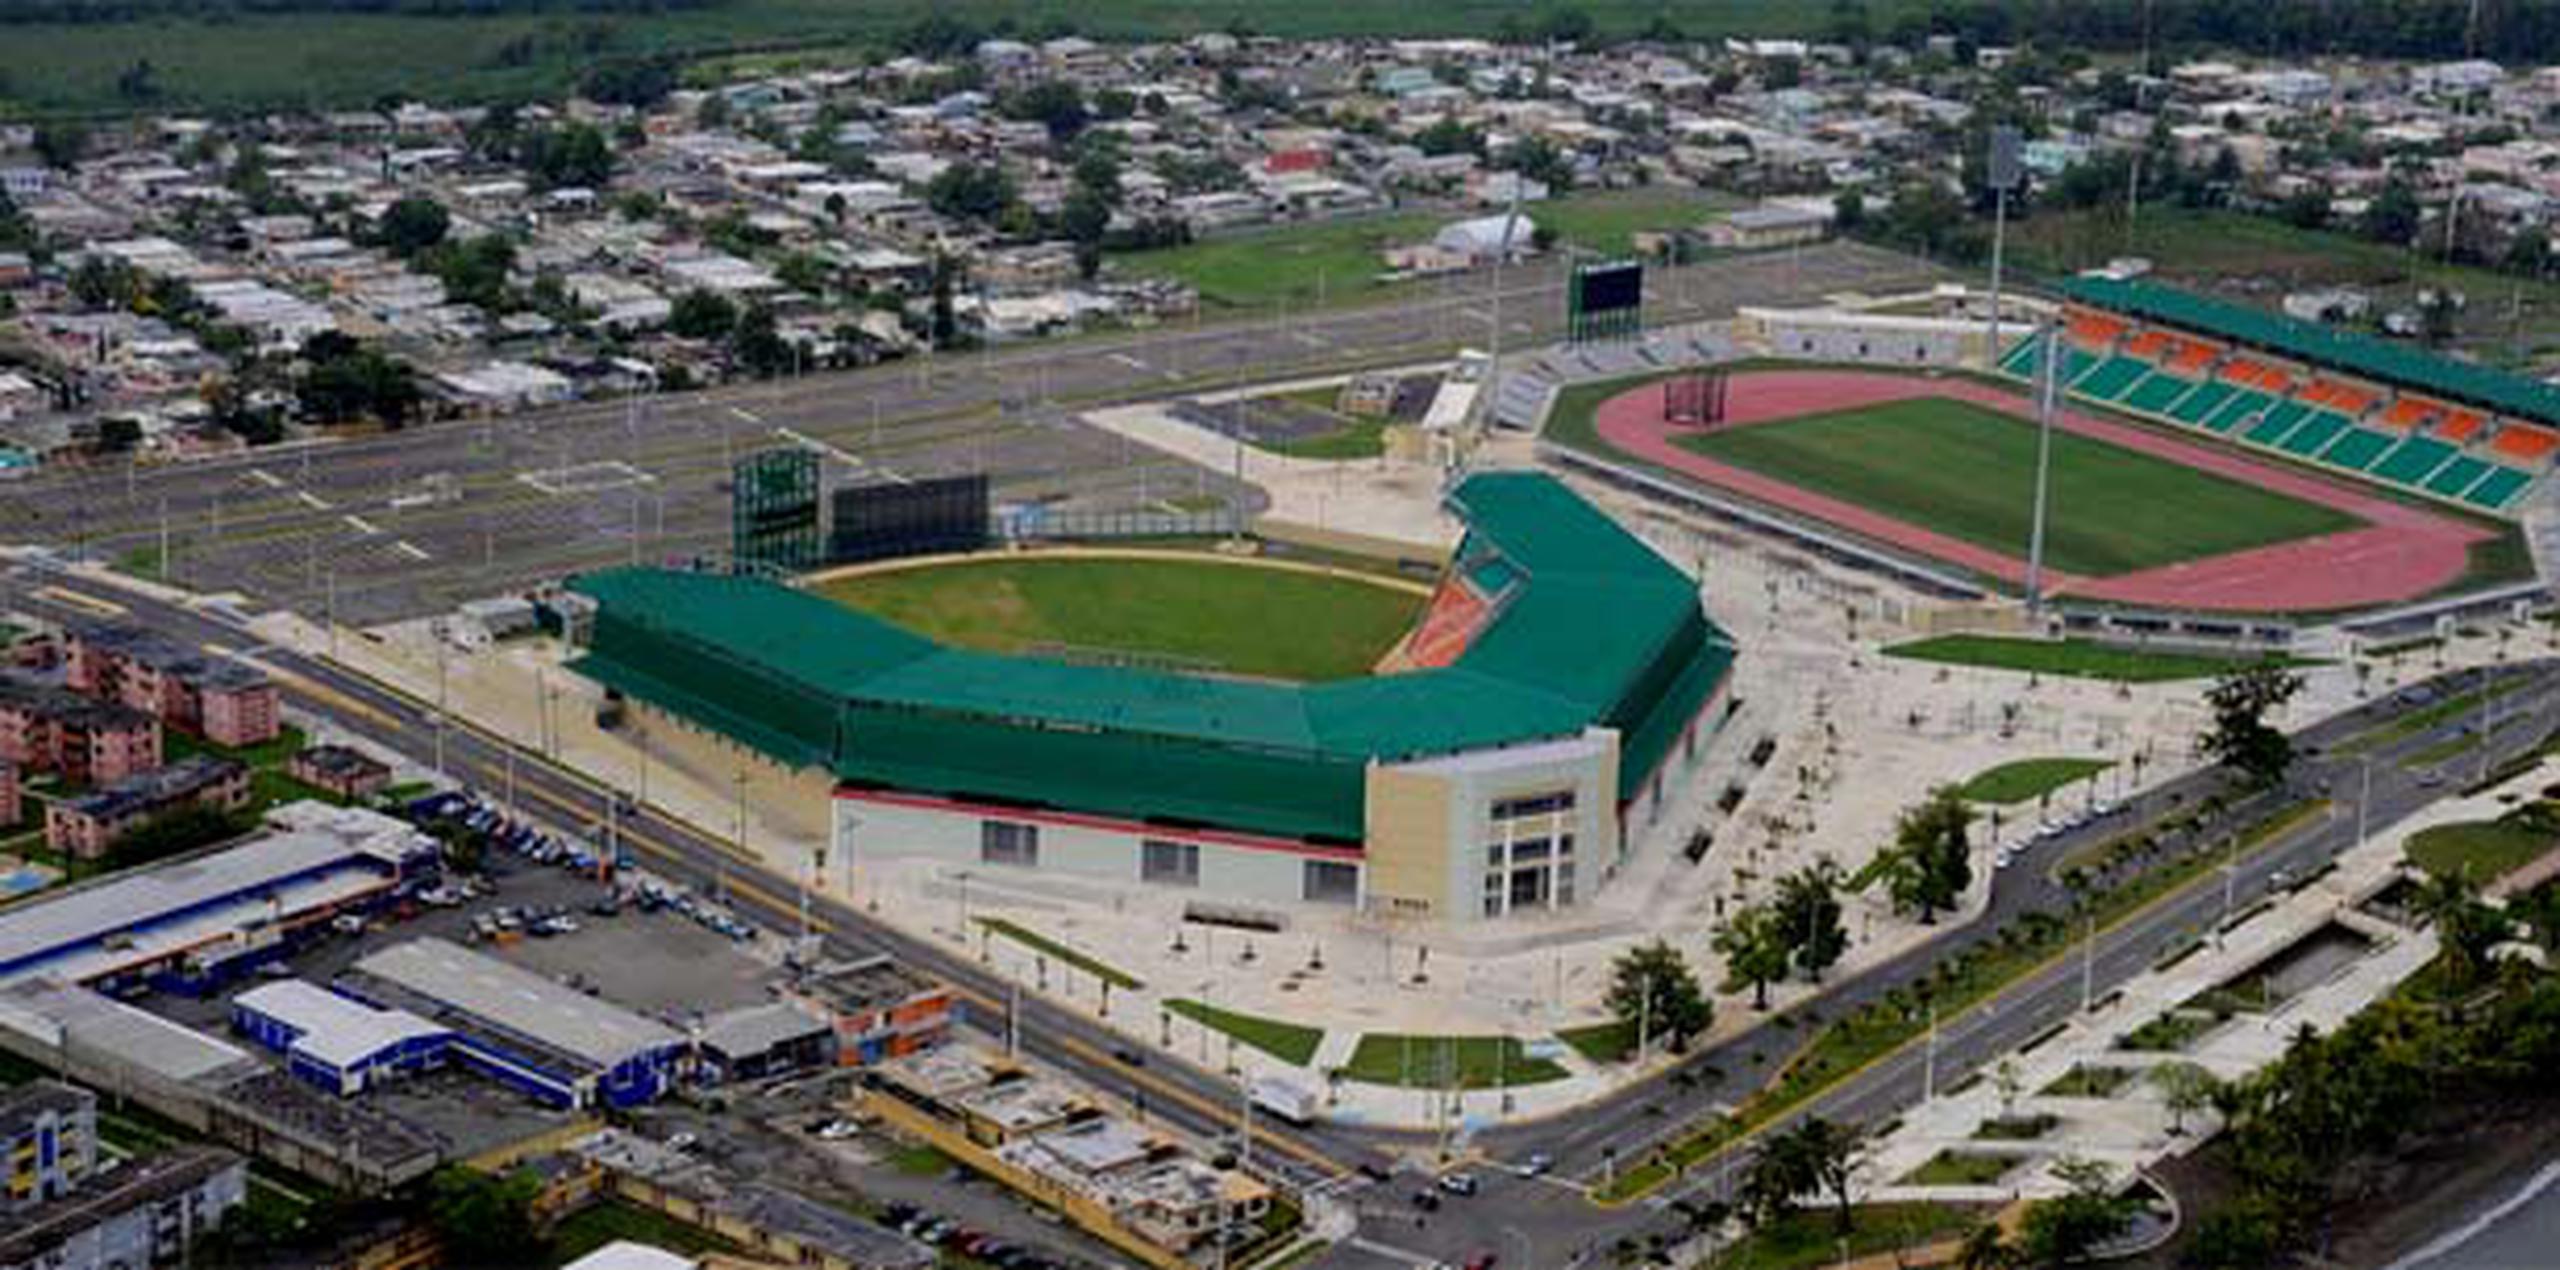 La superficie del estadio de atletismo de Mayagüez es nueva y se estrenará el 1 y 2 de abril, como parte de último evento clasificatorio de atletismo de las Justas. (Suministrada)